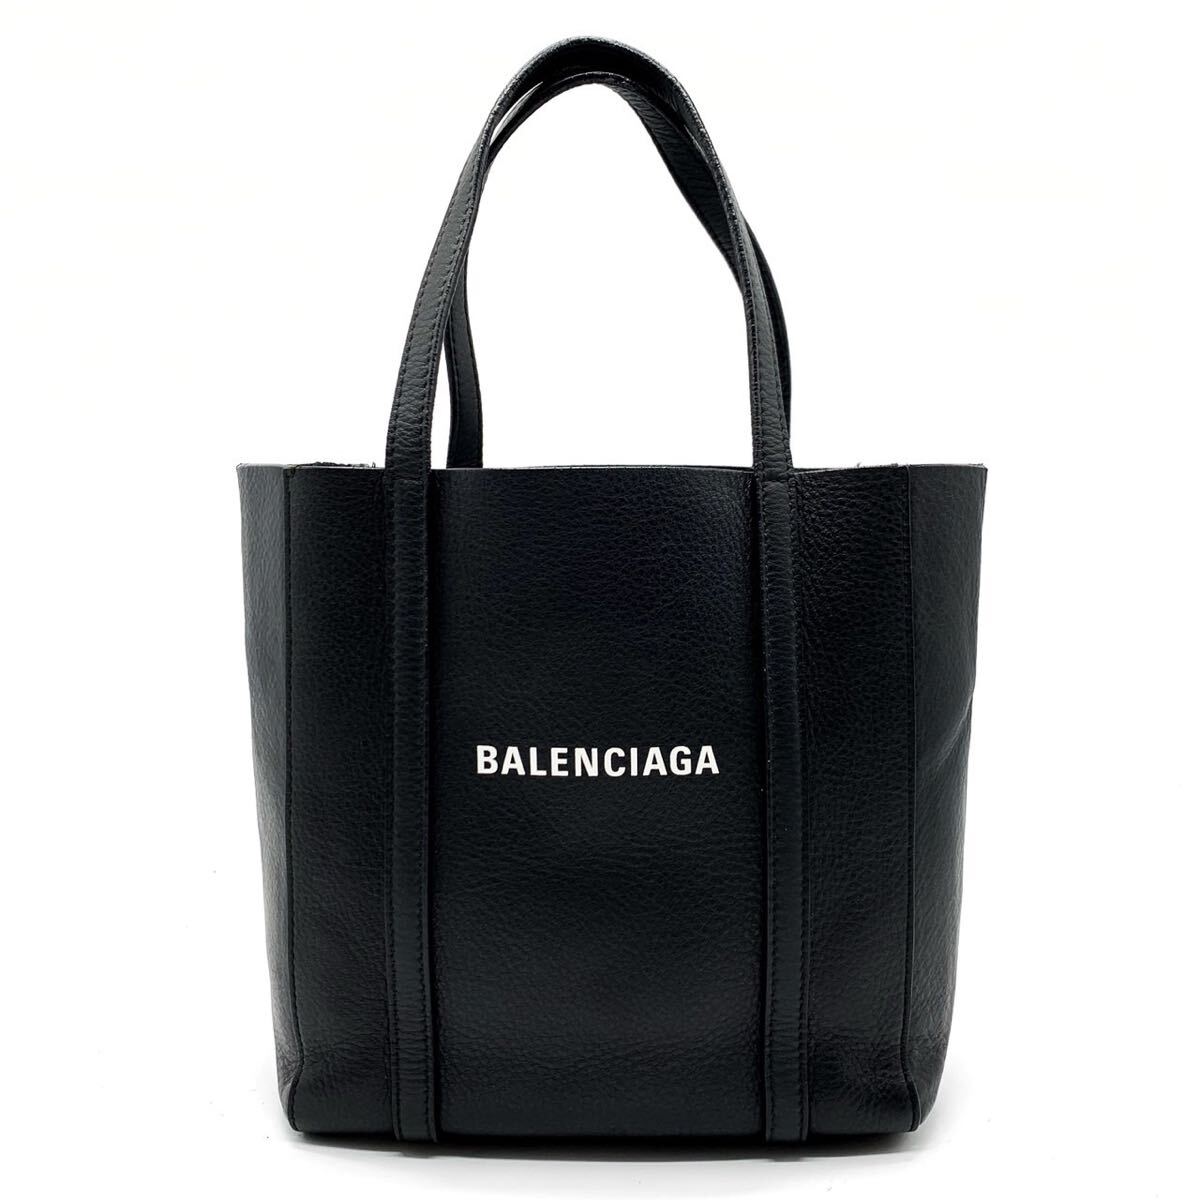 1 иен [ высший класс ]BALENCIAGA Balenciaga 2way сумка на плечо большая сумка рука Every teiXXS кожа натуральная кожа черный мужской женский 